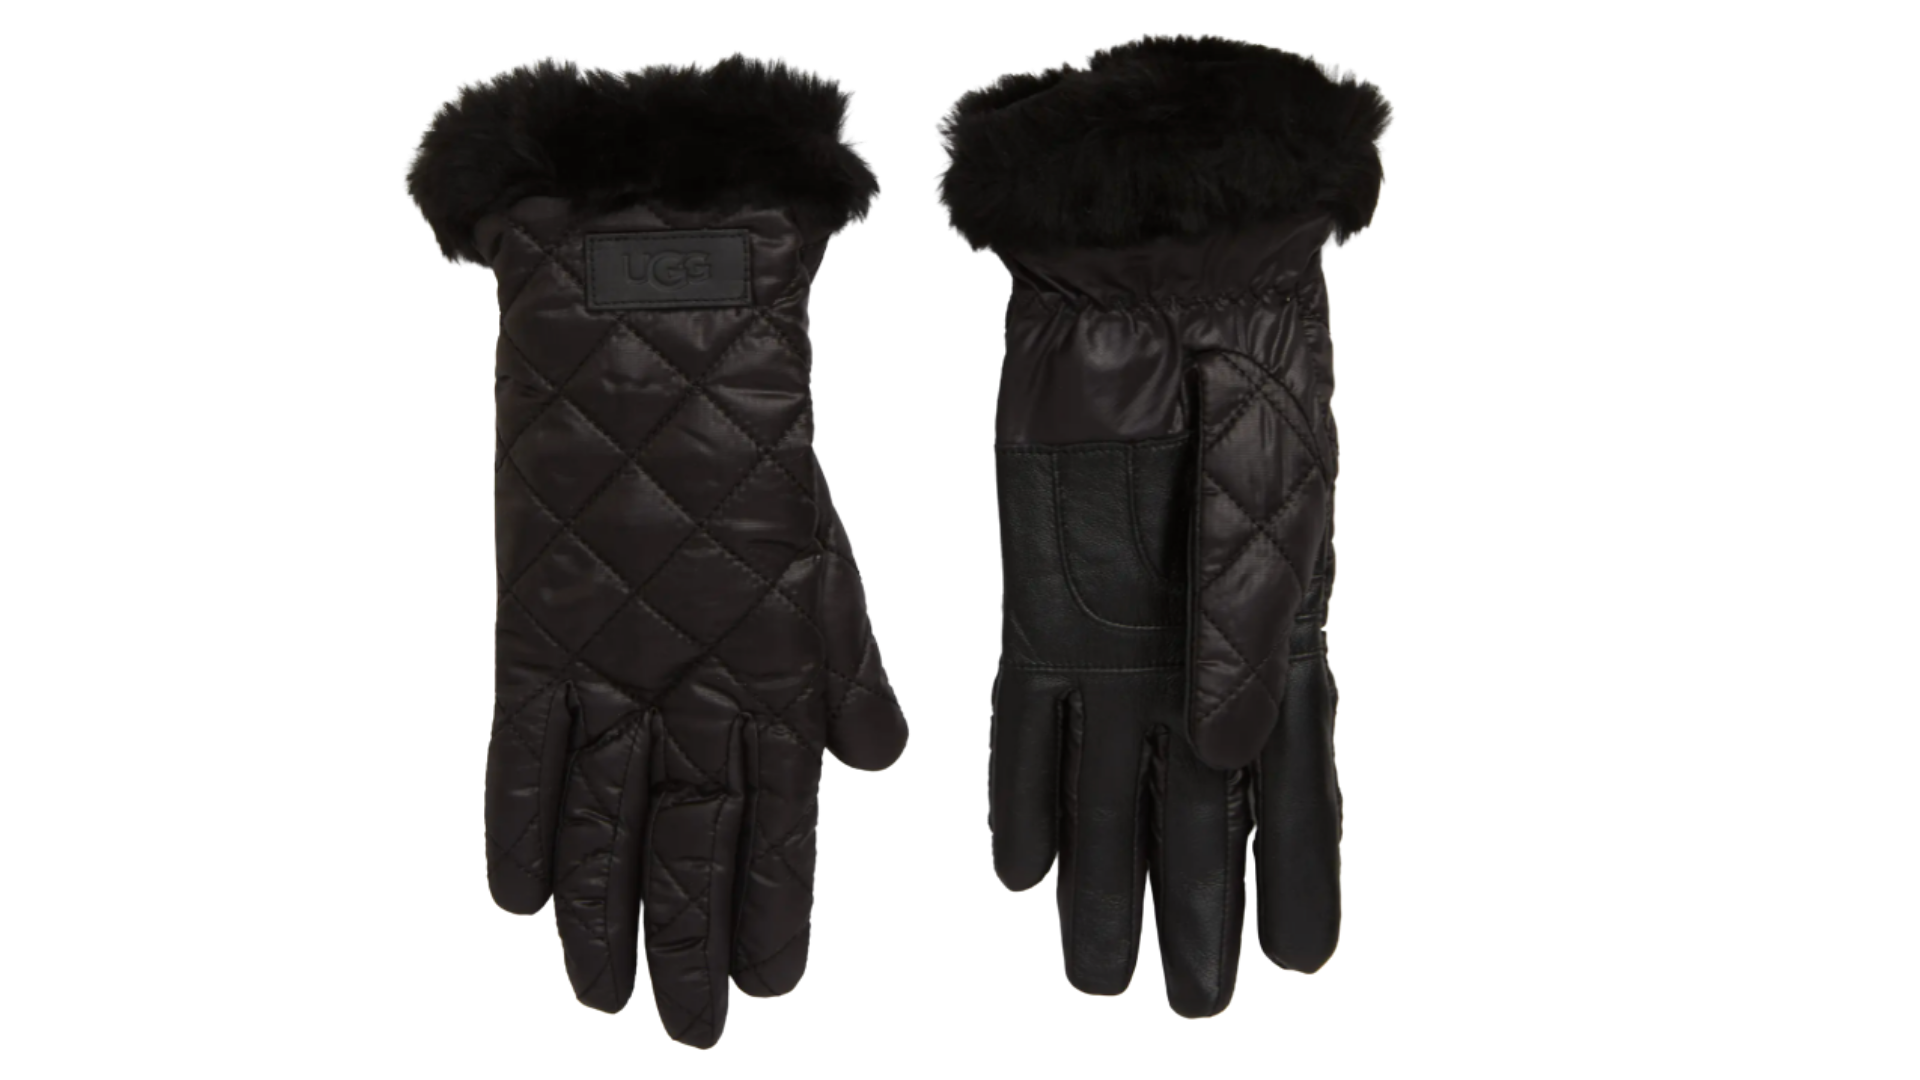 Ugg best winter gloves